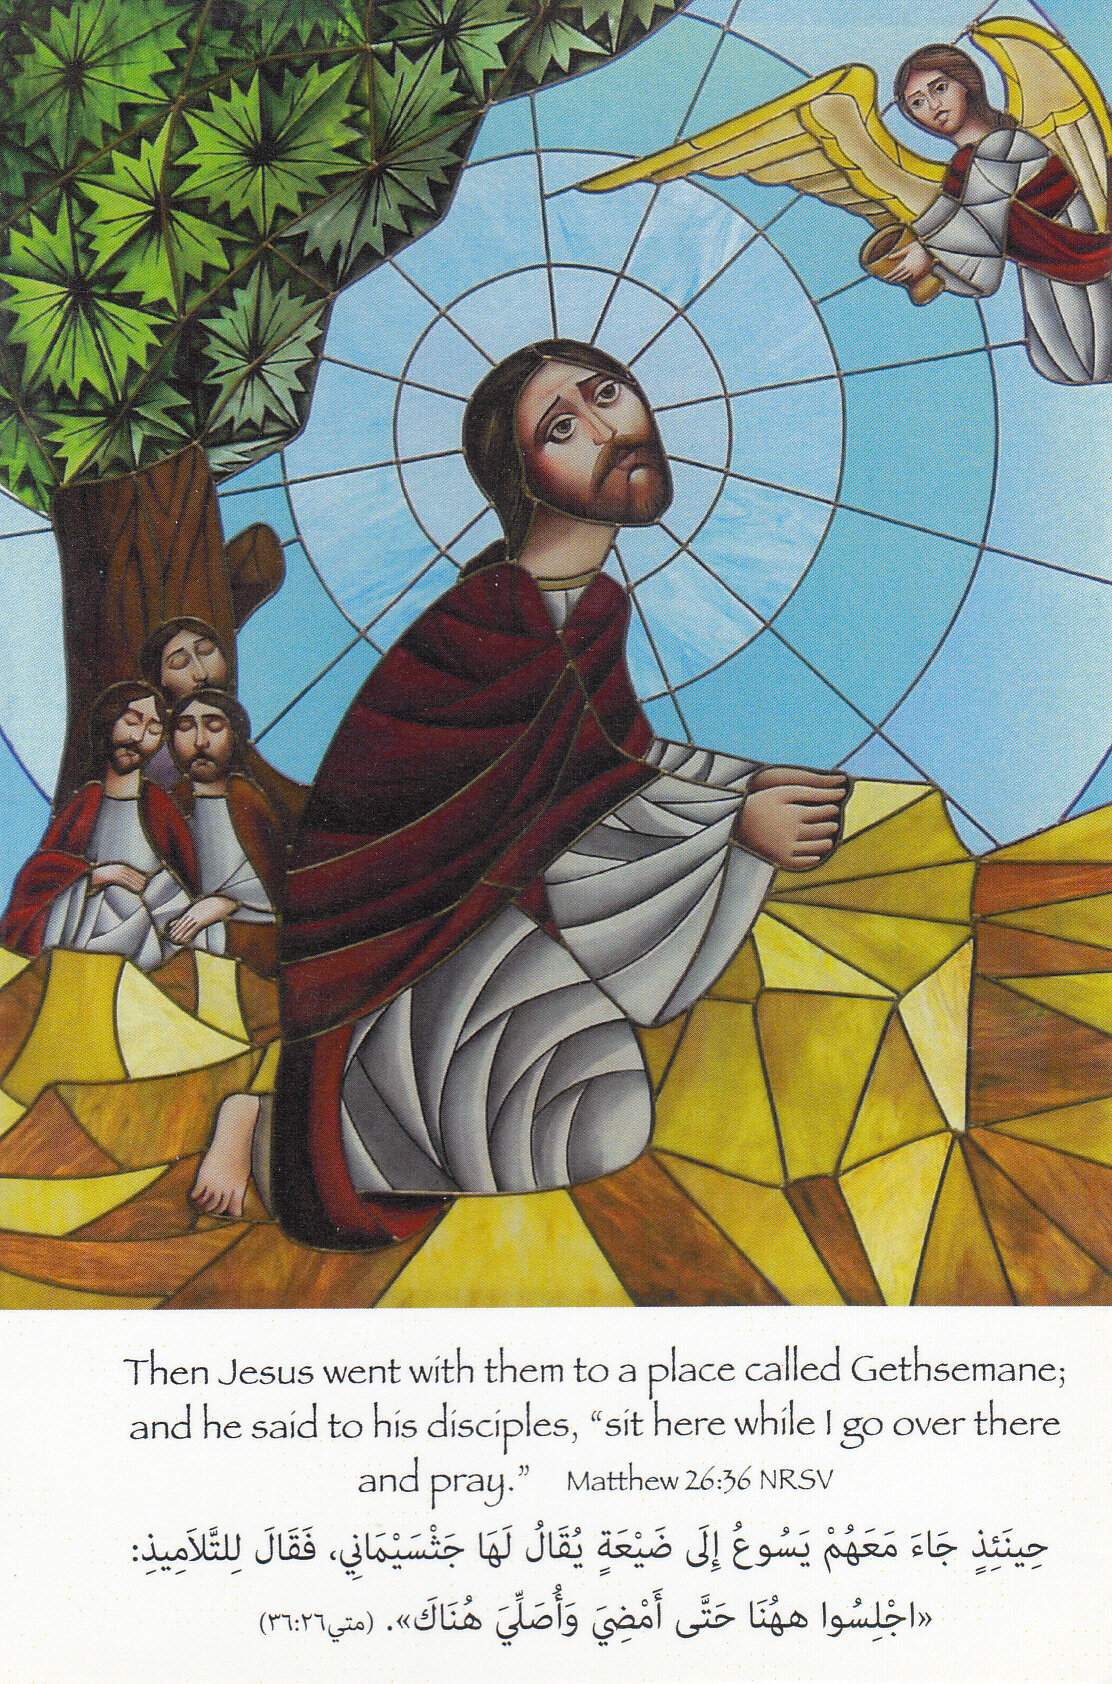  Jesus praying in garden 